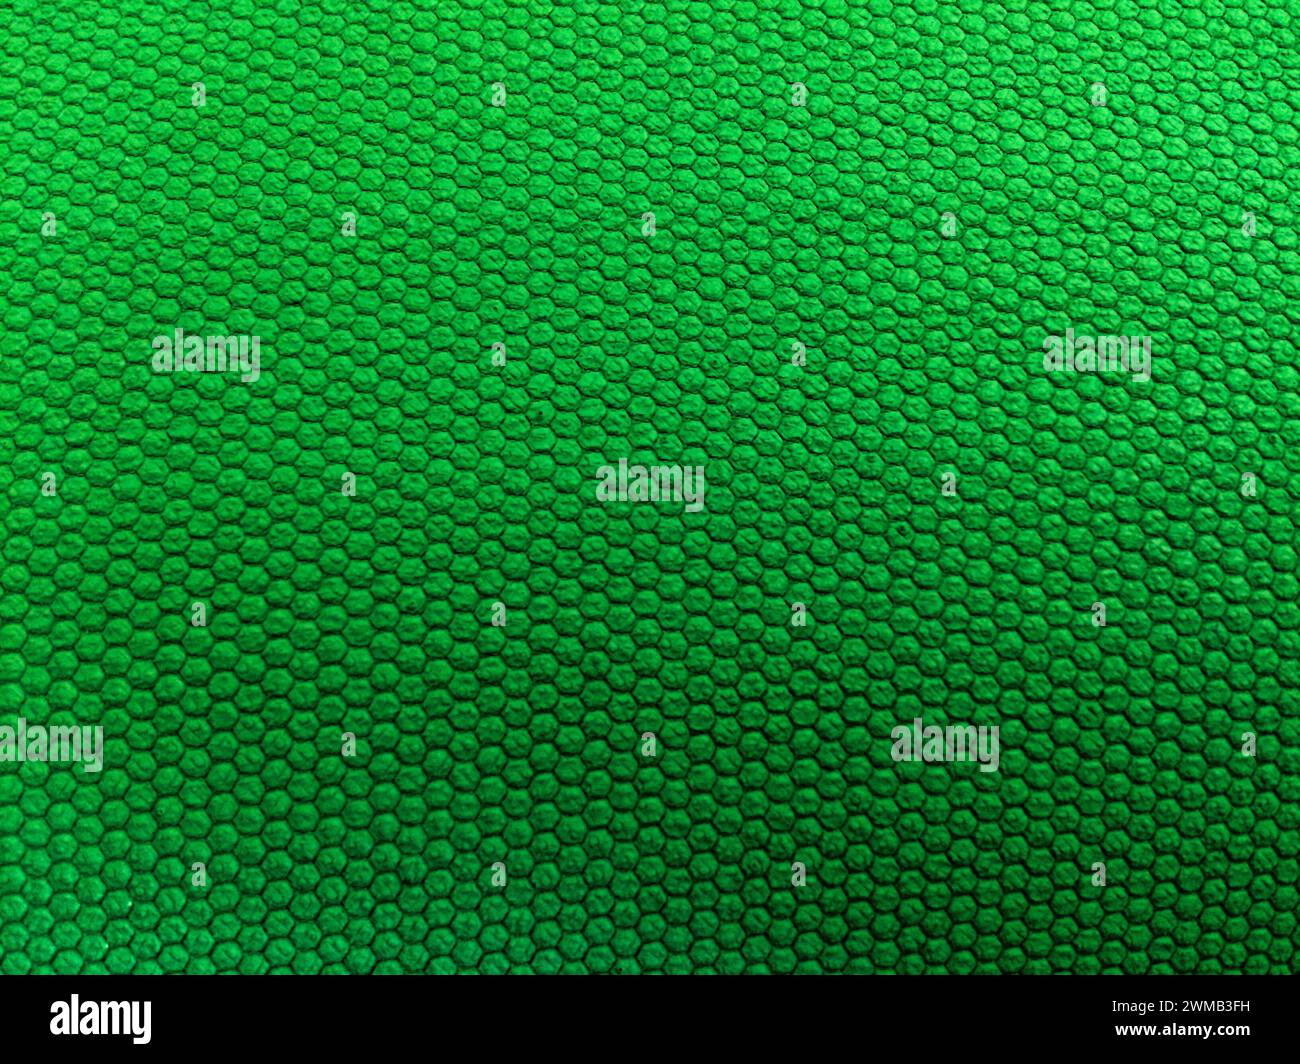 L'immagine mostra una superficie a trama verde con piccoli cerchi uniformi in rilievo. Foto Stock